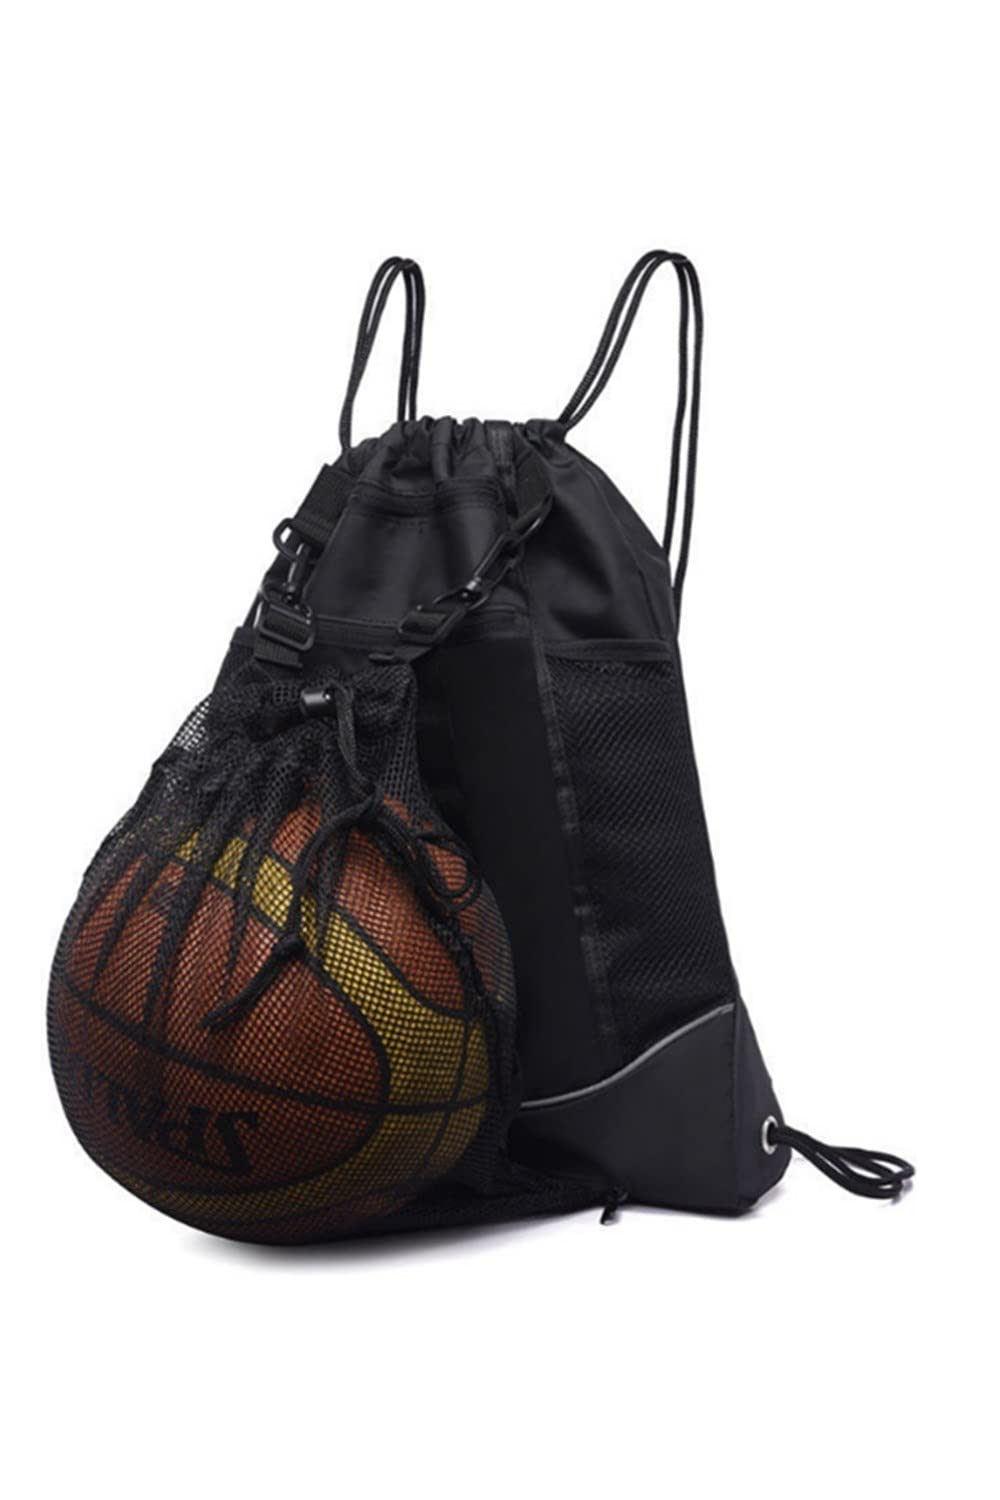 楽天COCO 生活便利グッズYFFSFDC バスケットボールバッグ バスケ リュック サッカーボールバッグ ボールケース 軽量 便利 多機能 大容量 スポーツバッグ （ブラック）